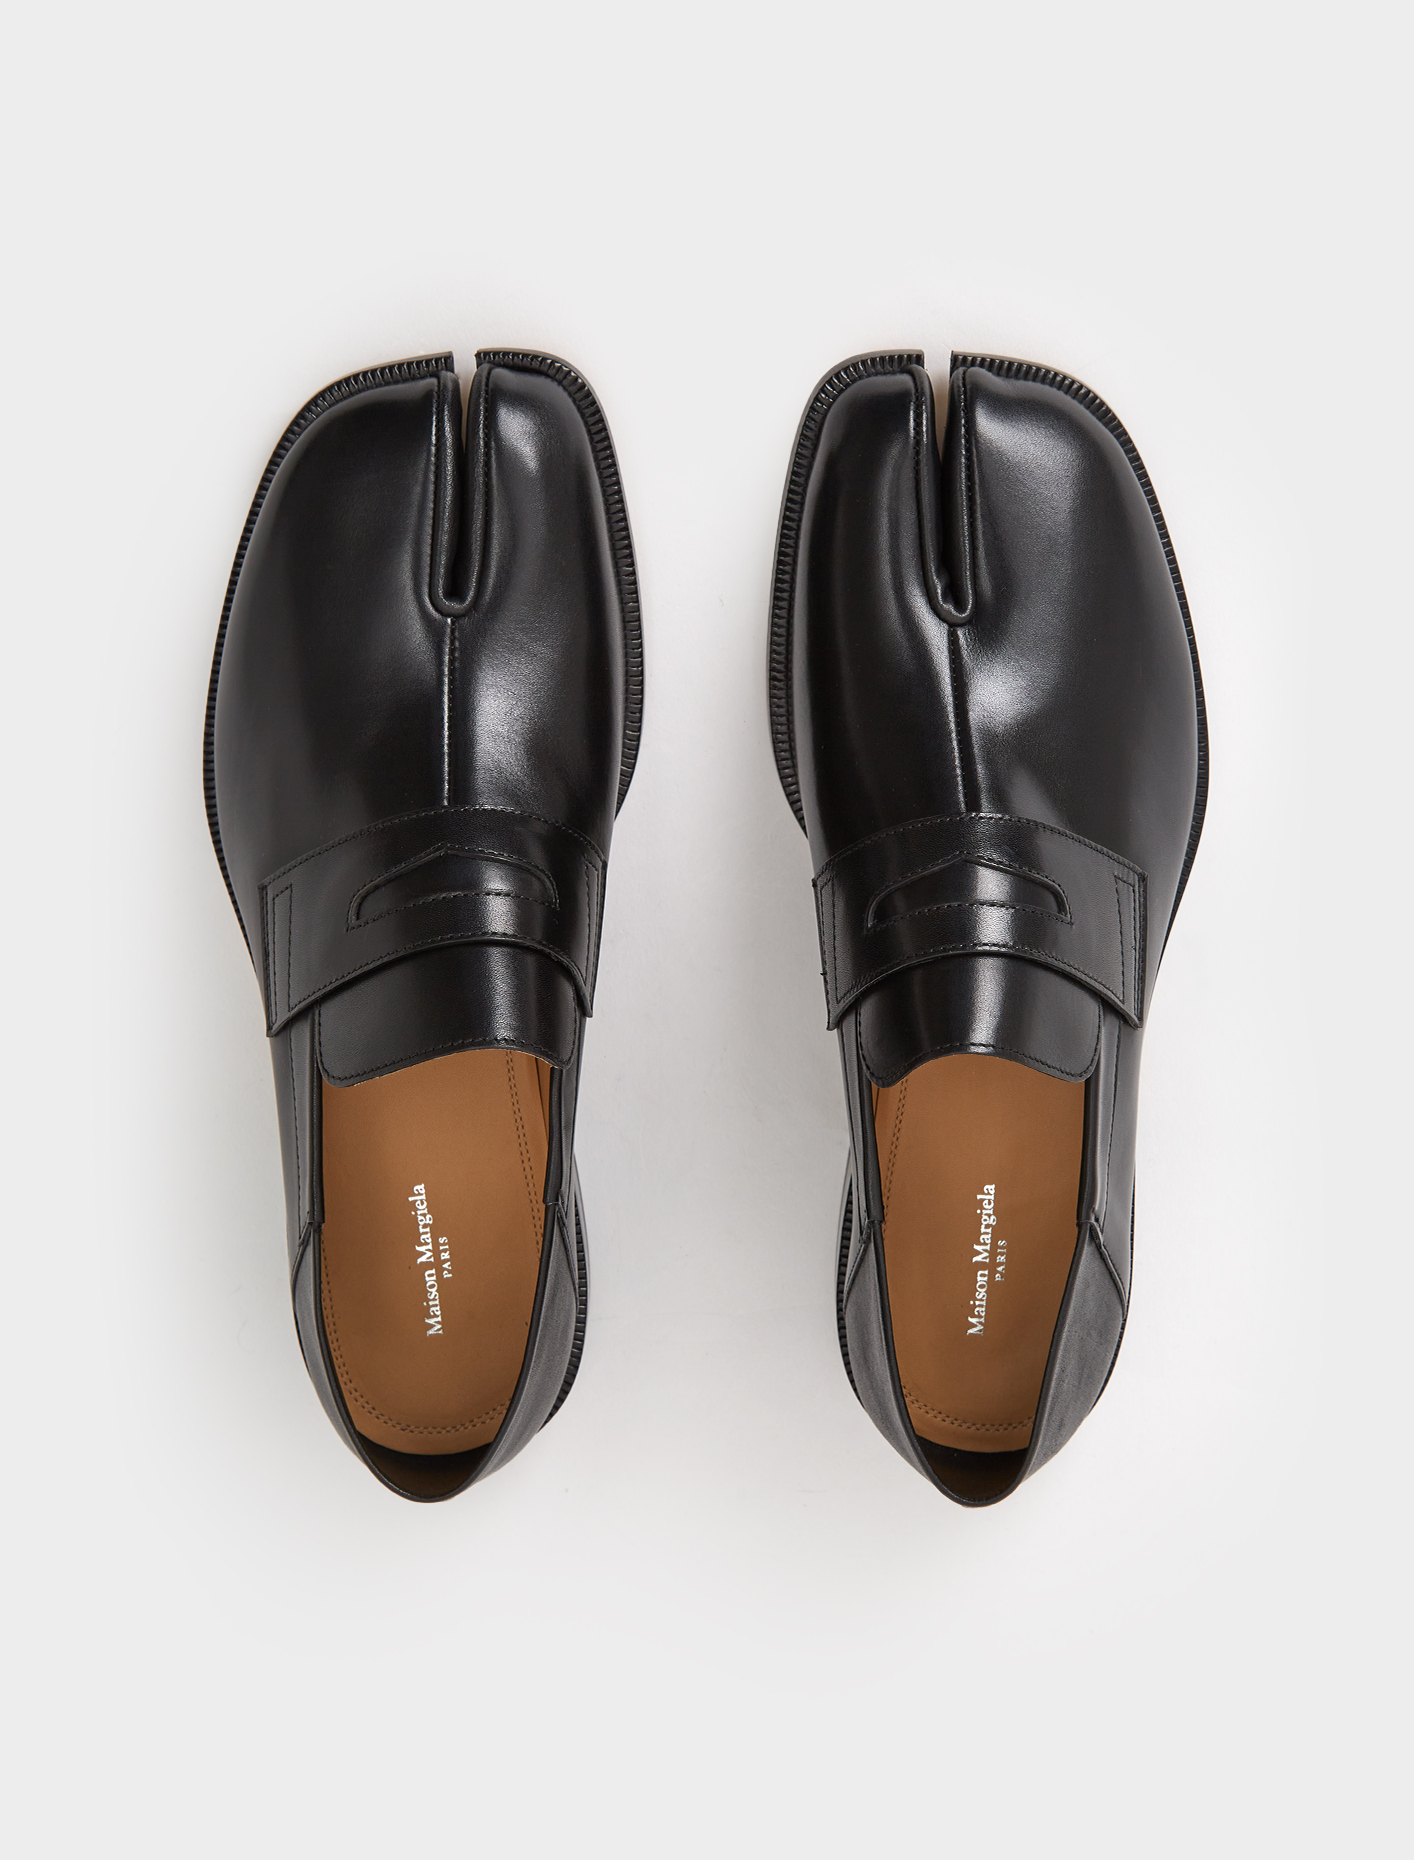 Maison Margiela Tabi Loafers in Black | Voo Store Berlin | Worldwide ...